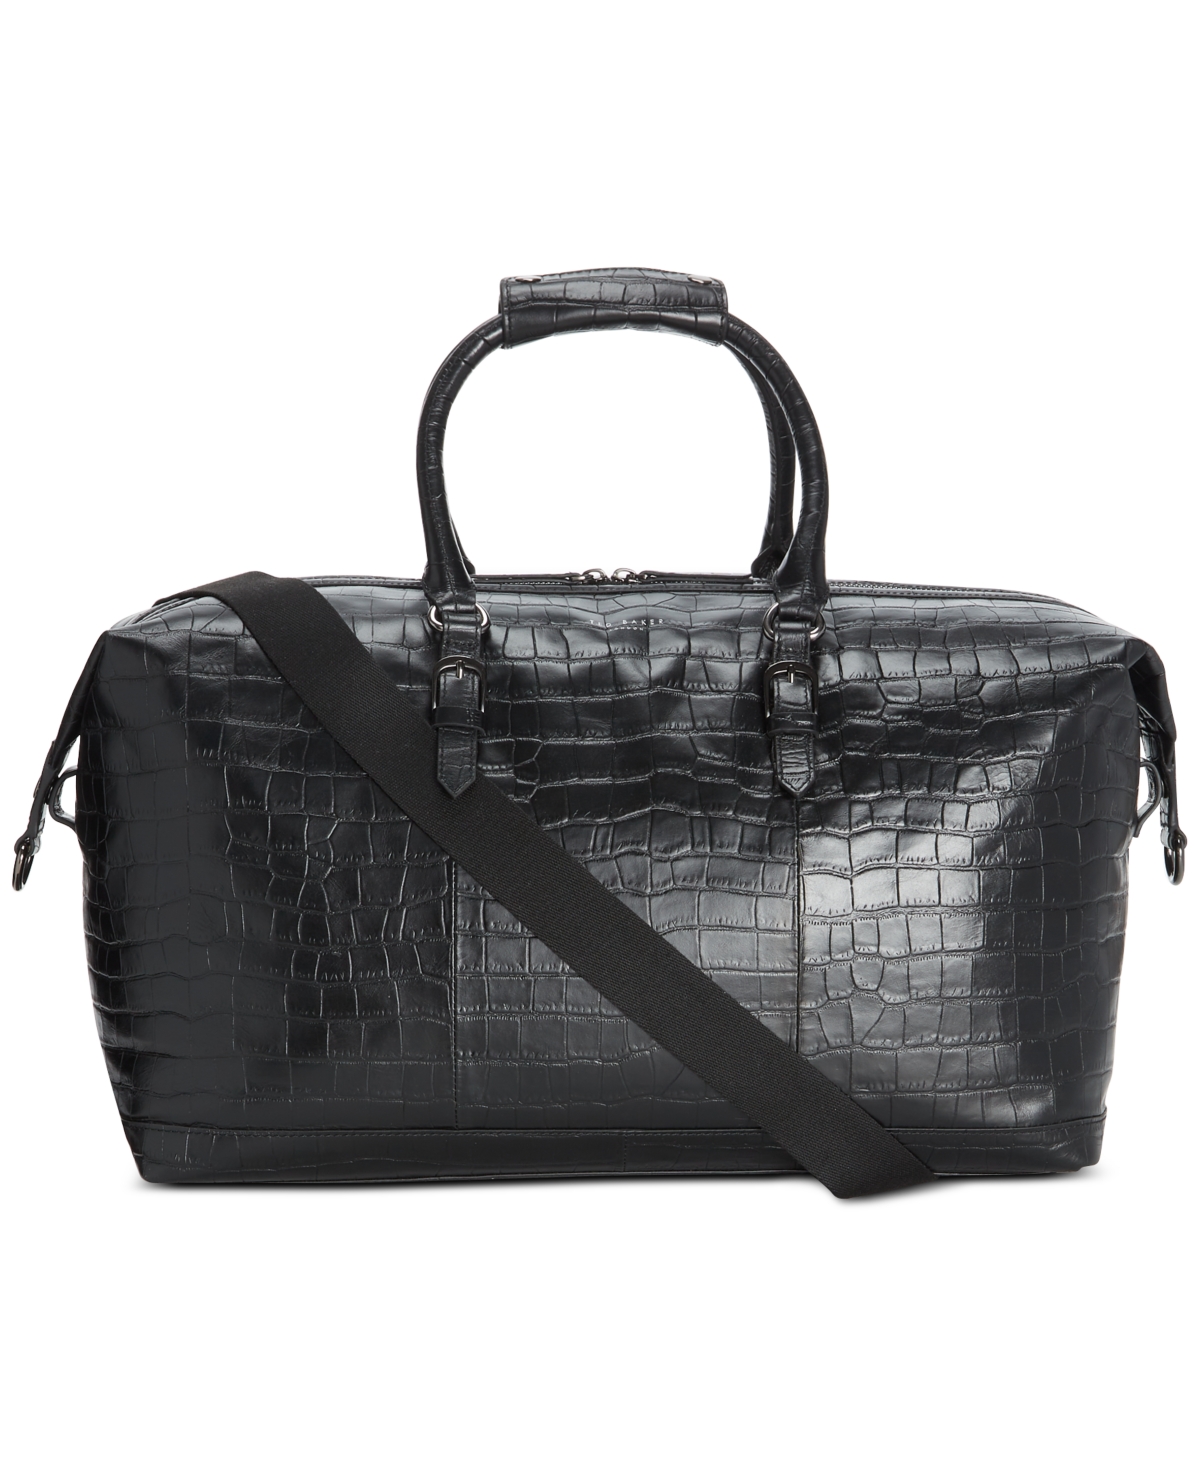 Men's Fabiio Croc Embossed Leather Bag - Black